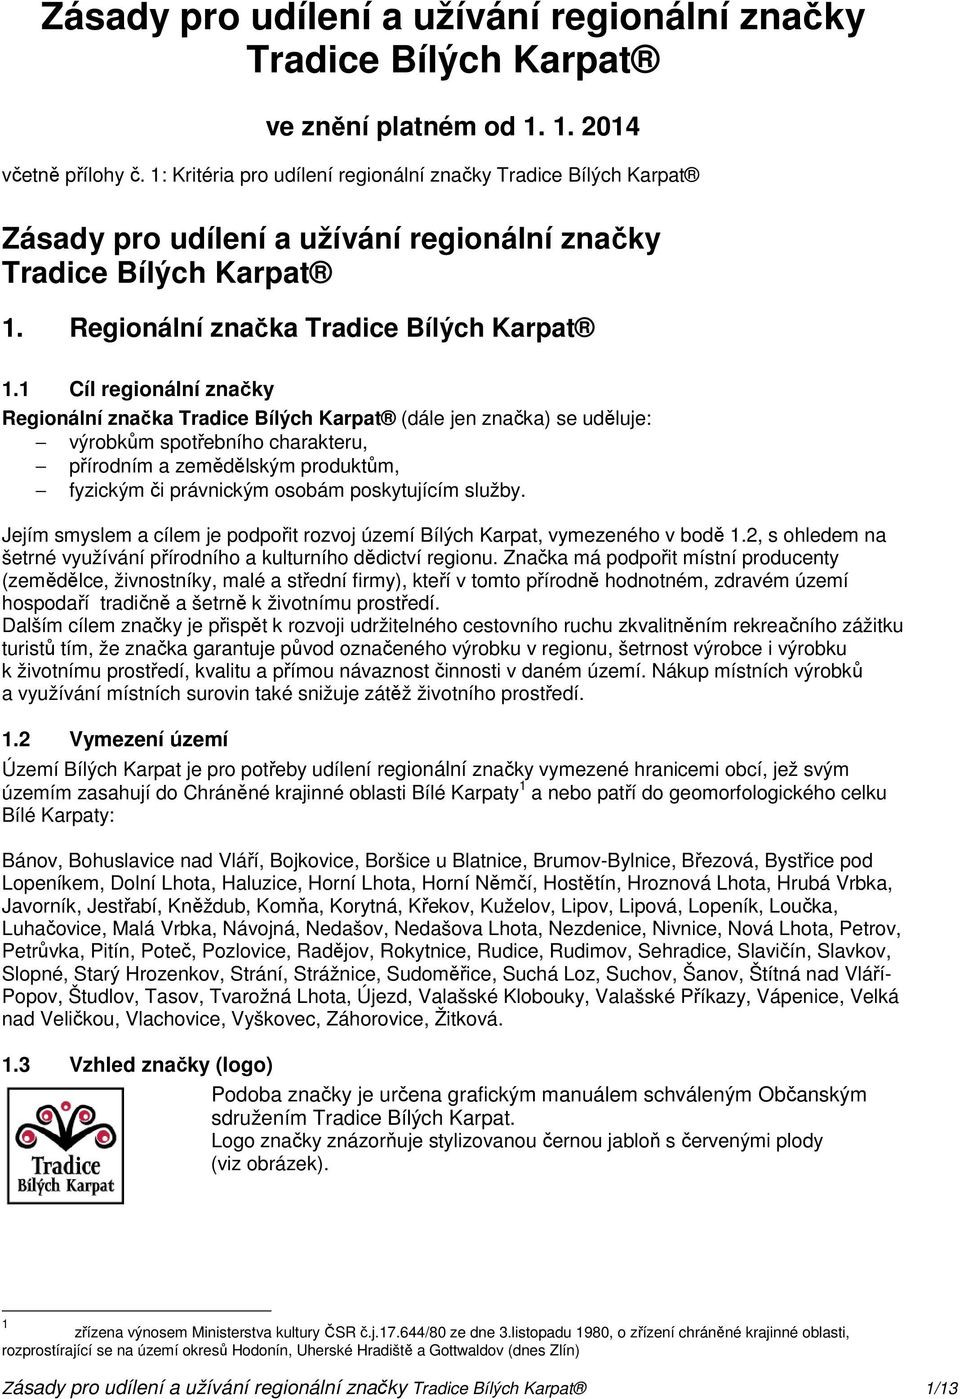 1 Cíl regionální značky Regionální značka Tradice Bílých Karpat (dále jen značka) se uděluje: výrobkům spotřebního charakteru, přírodním a zemědělským produktům, fyzickým či právnickým osobám